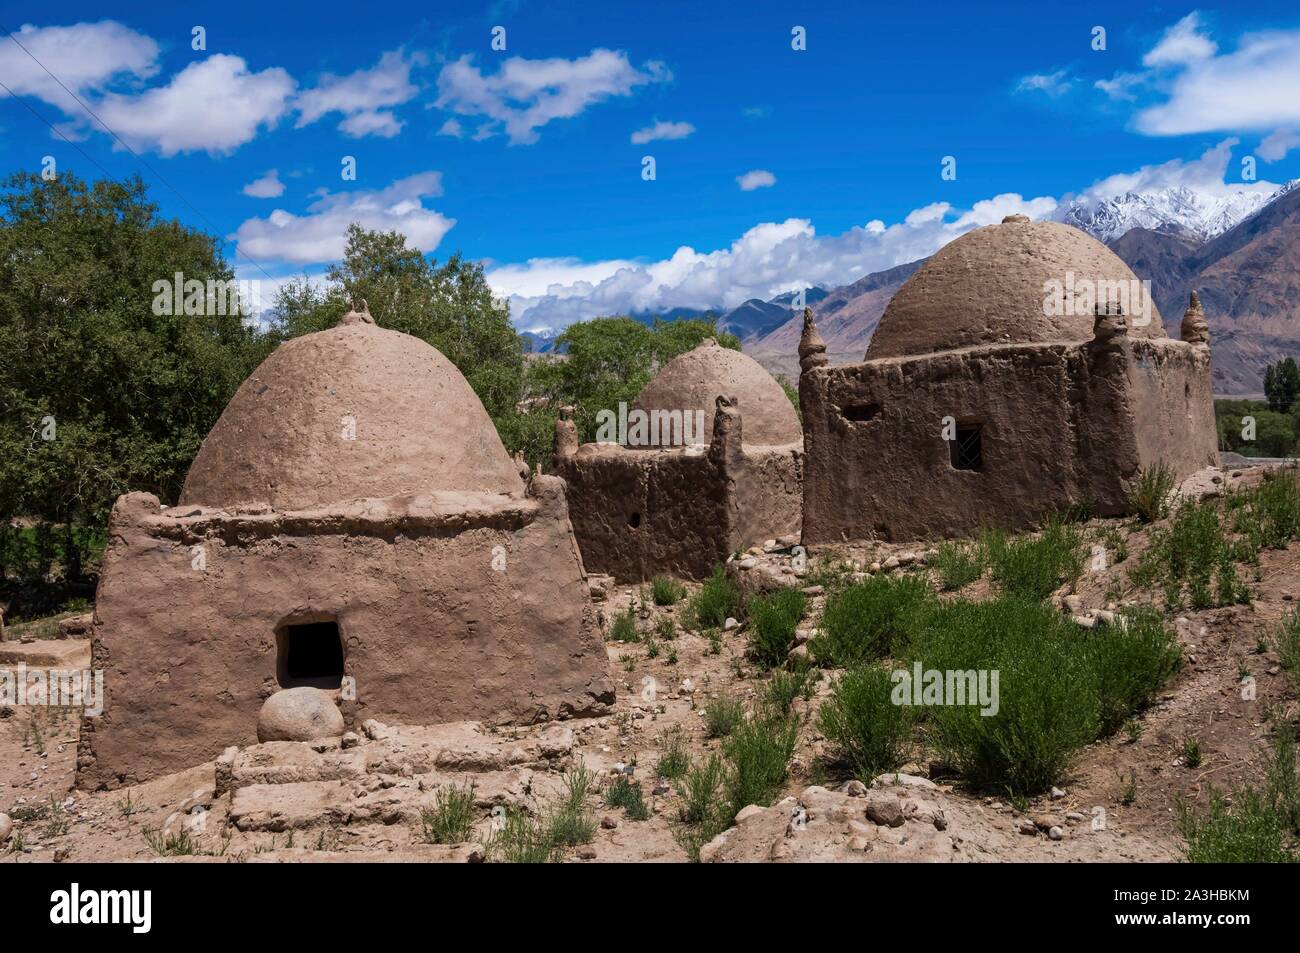 La Chine, le Xinjiang, hauts plateaux du Pamir, les pâturages et les communautés nomades, tadjik de Taxkorgan tadjik tumbs, adobe Banque D'Images